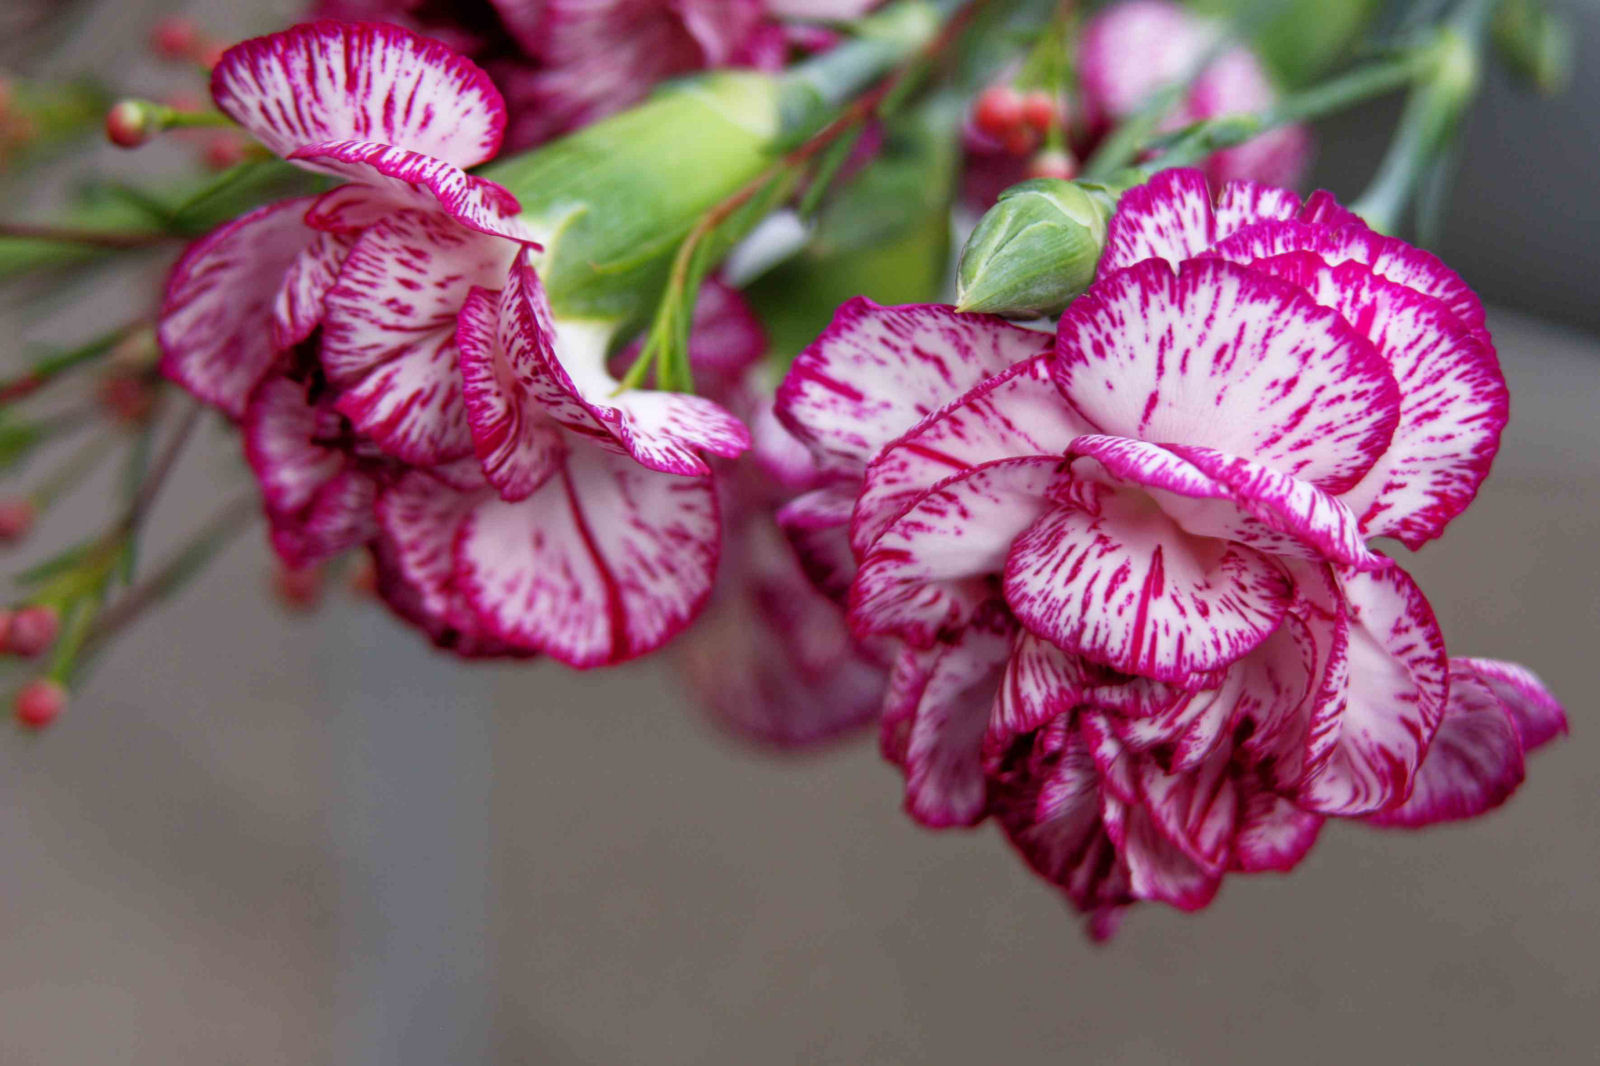 Cravos (Dianthus caryophyllus) para as moas, abraos para os amigos, boa semana a todos!